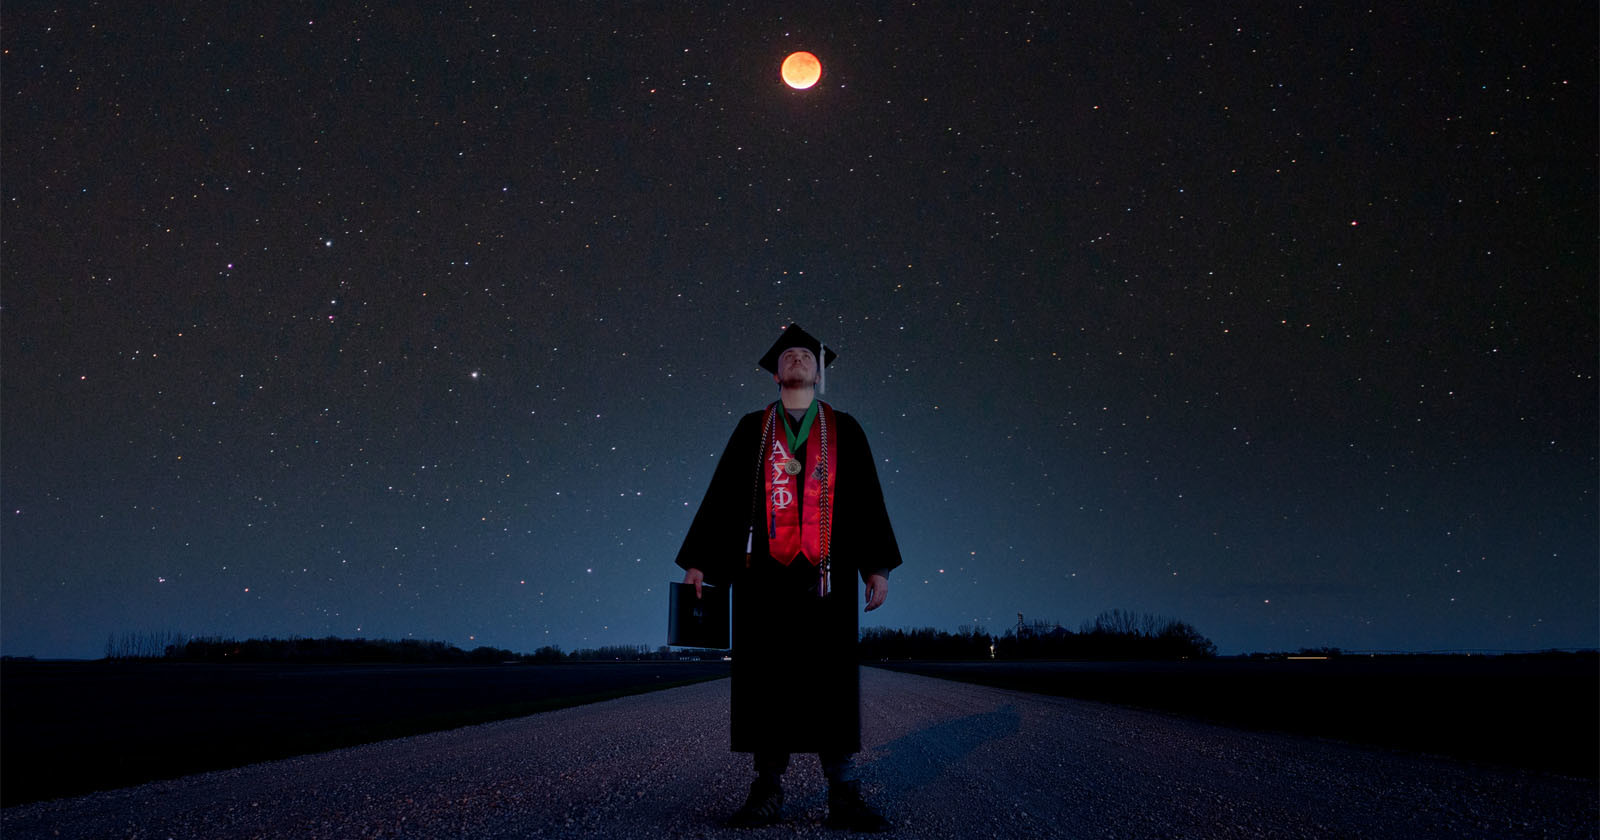 Astrophysics Student Takes Graduation Photo Under a Total Lunar Eclipse